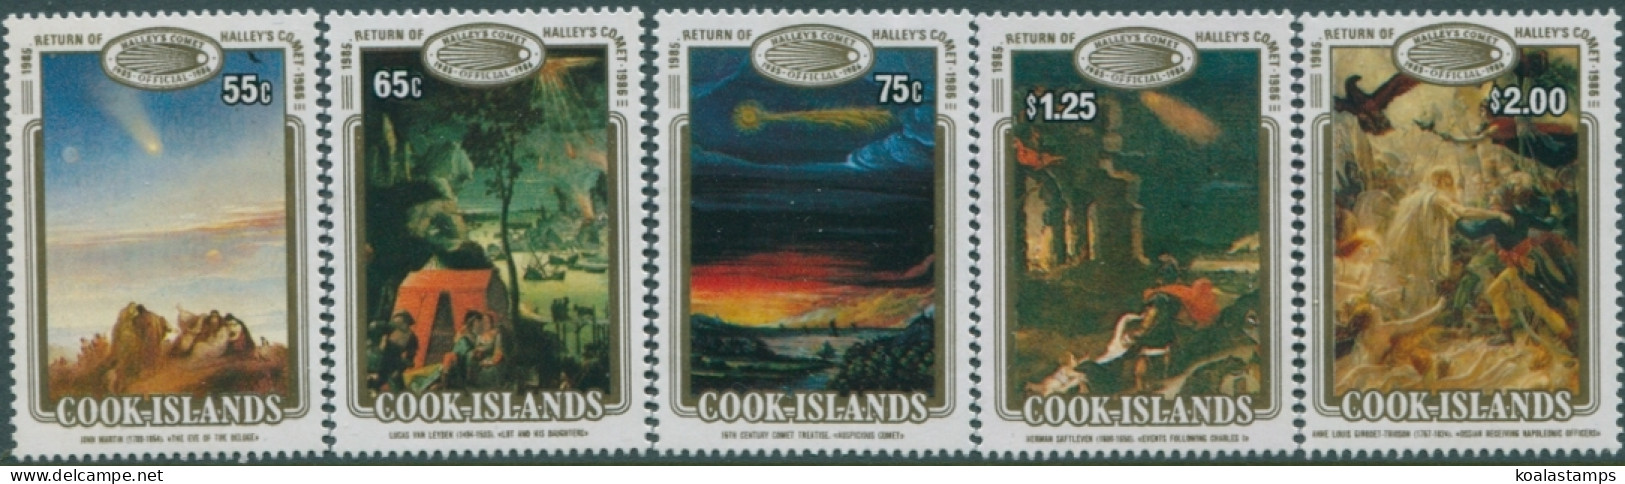 Cook Islands 1986 SG1058-1062 Halley's Comet Set MNH - Islas Cook